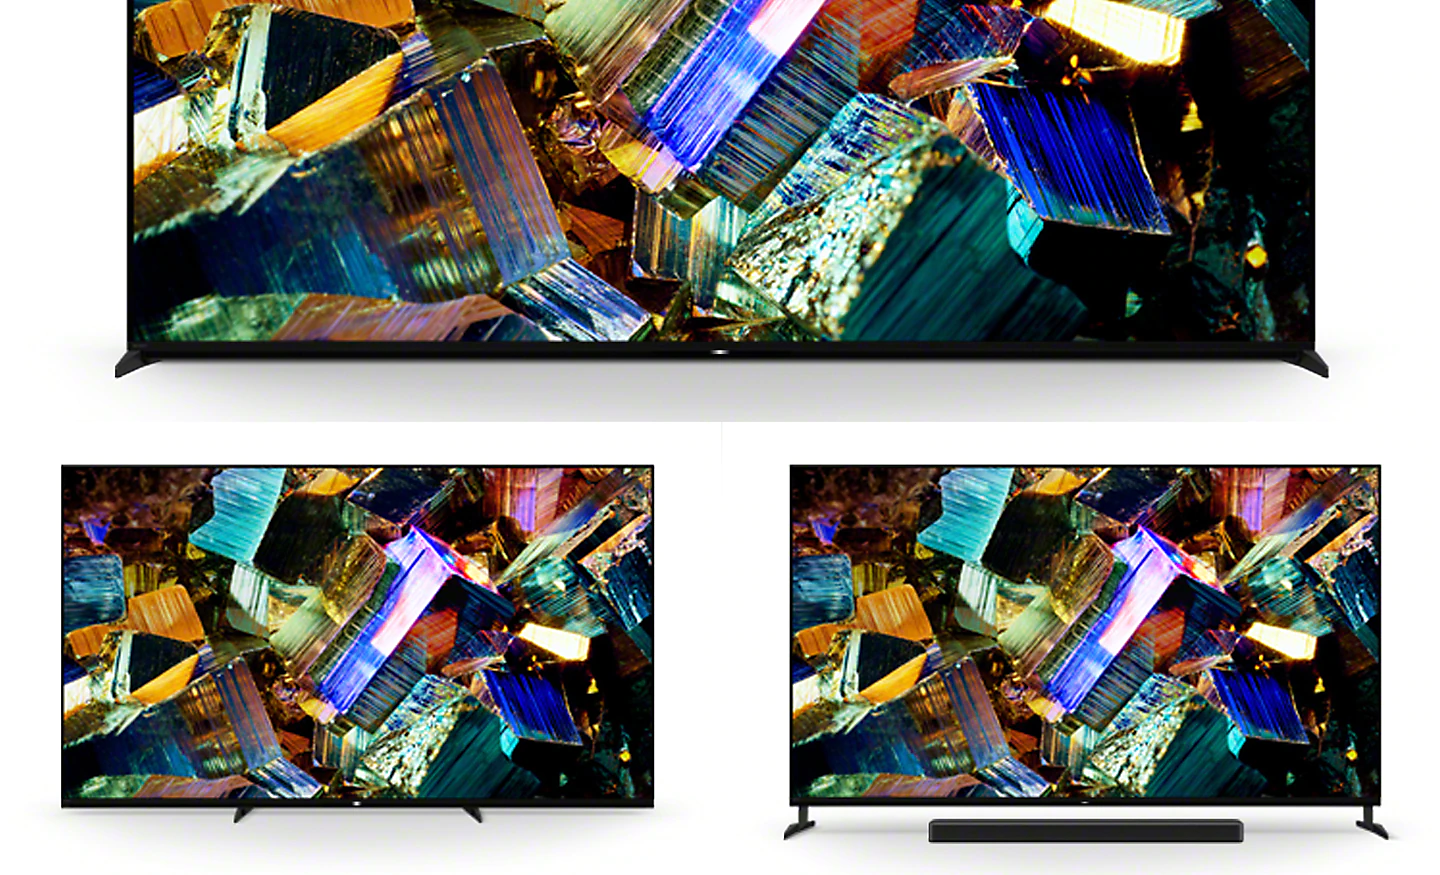 Snímek znázorňující stojan nastavitelný ve 3 směrech na televizoru s krabicemi obalenými barevnou folií na obrazovce